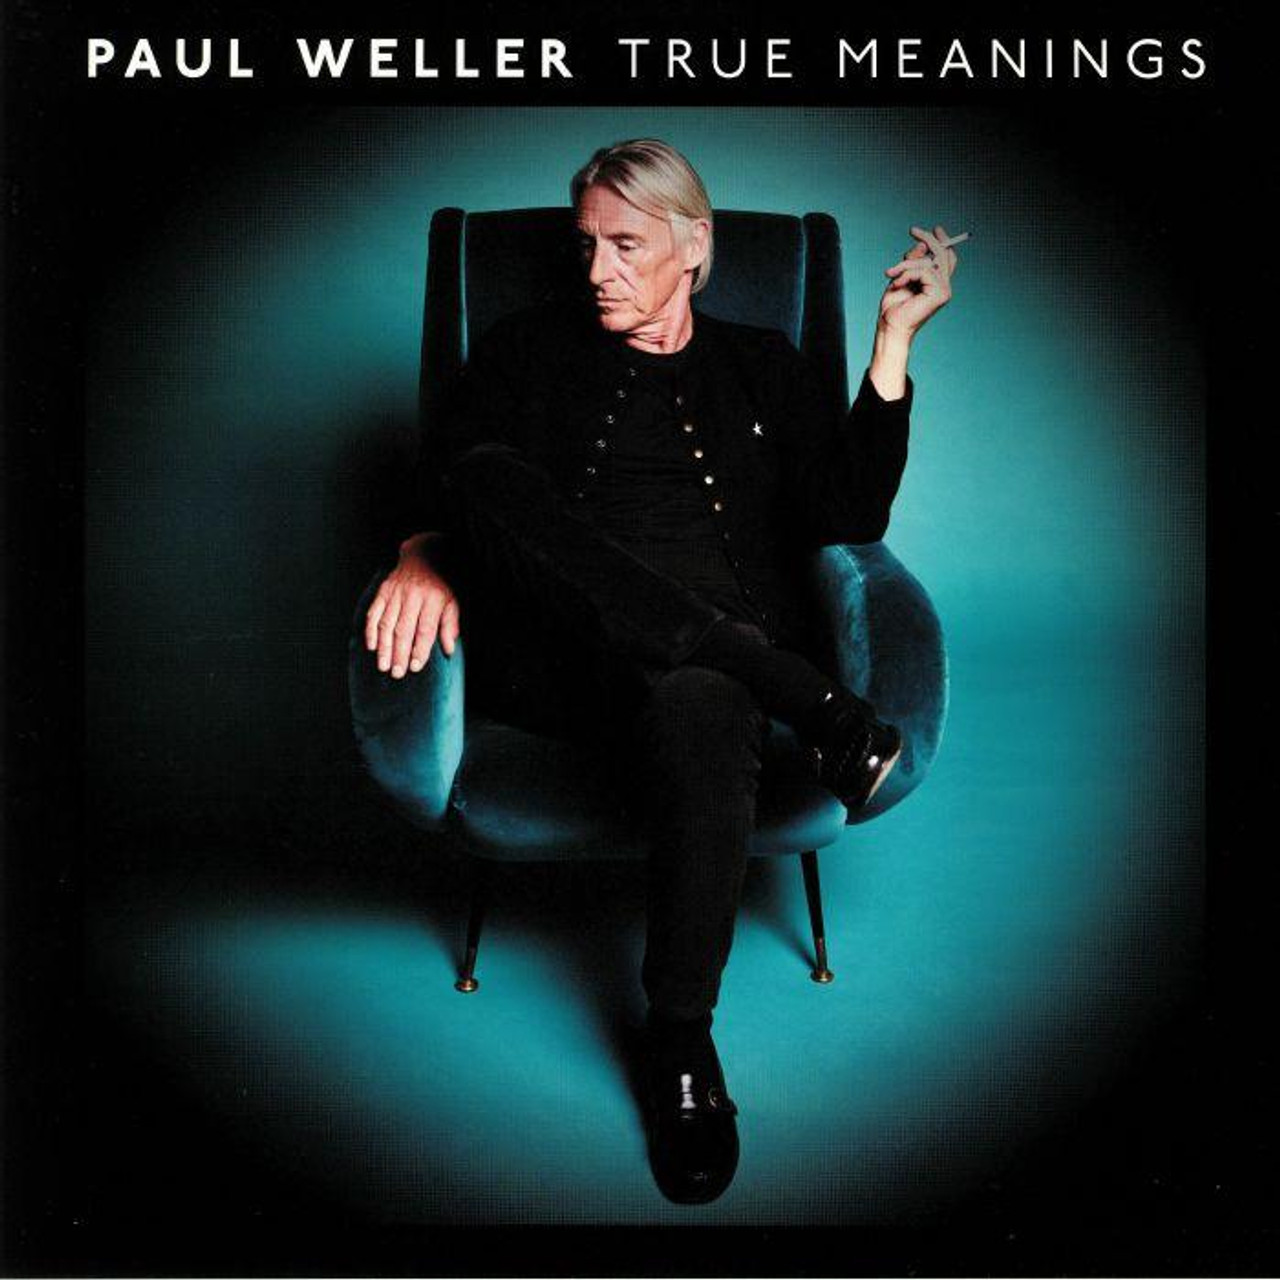 True Meanings by Paul Weller